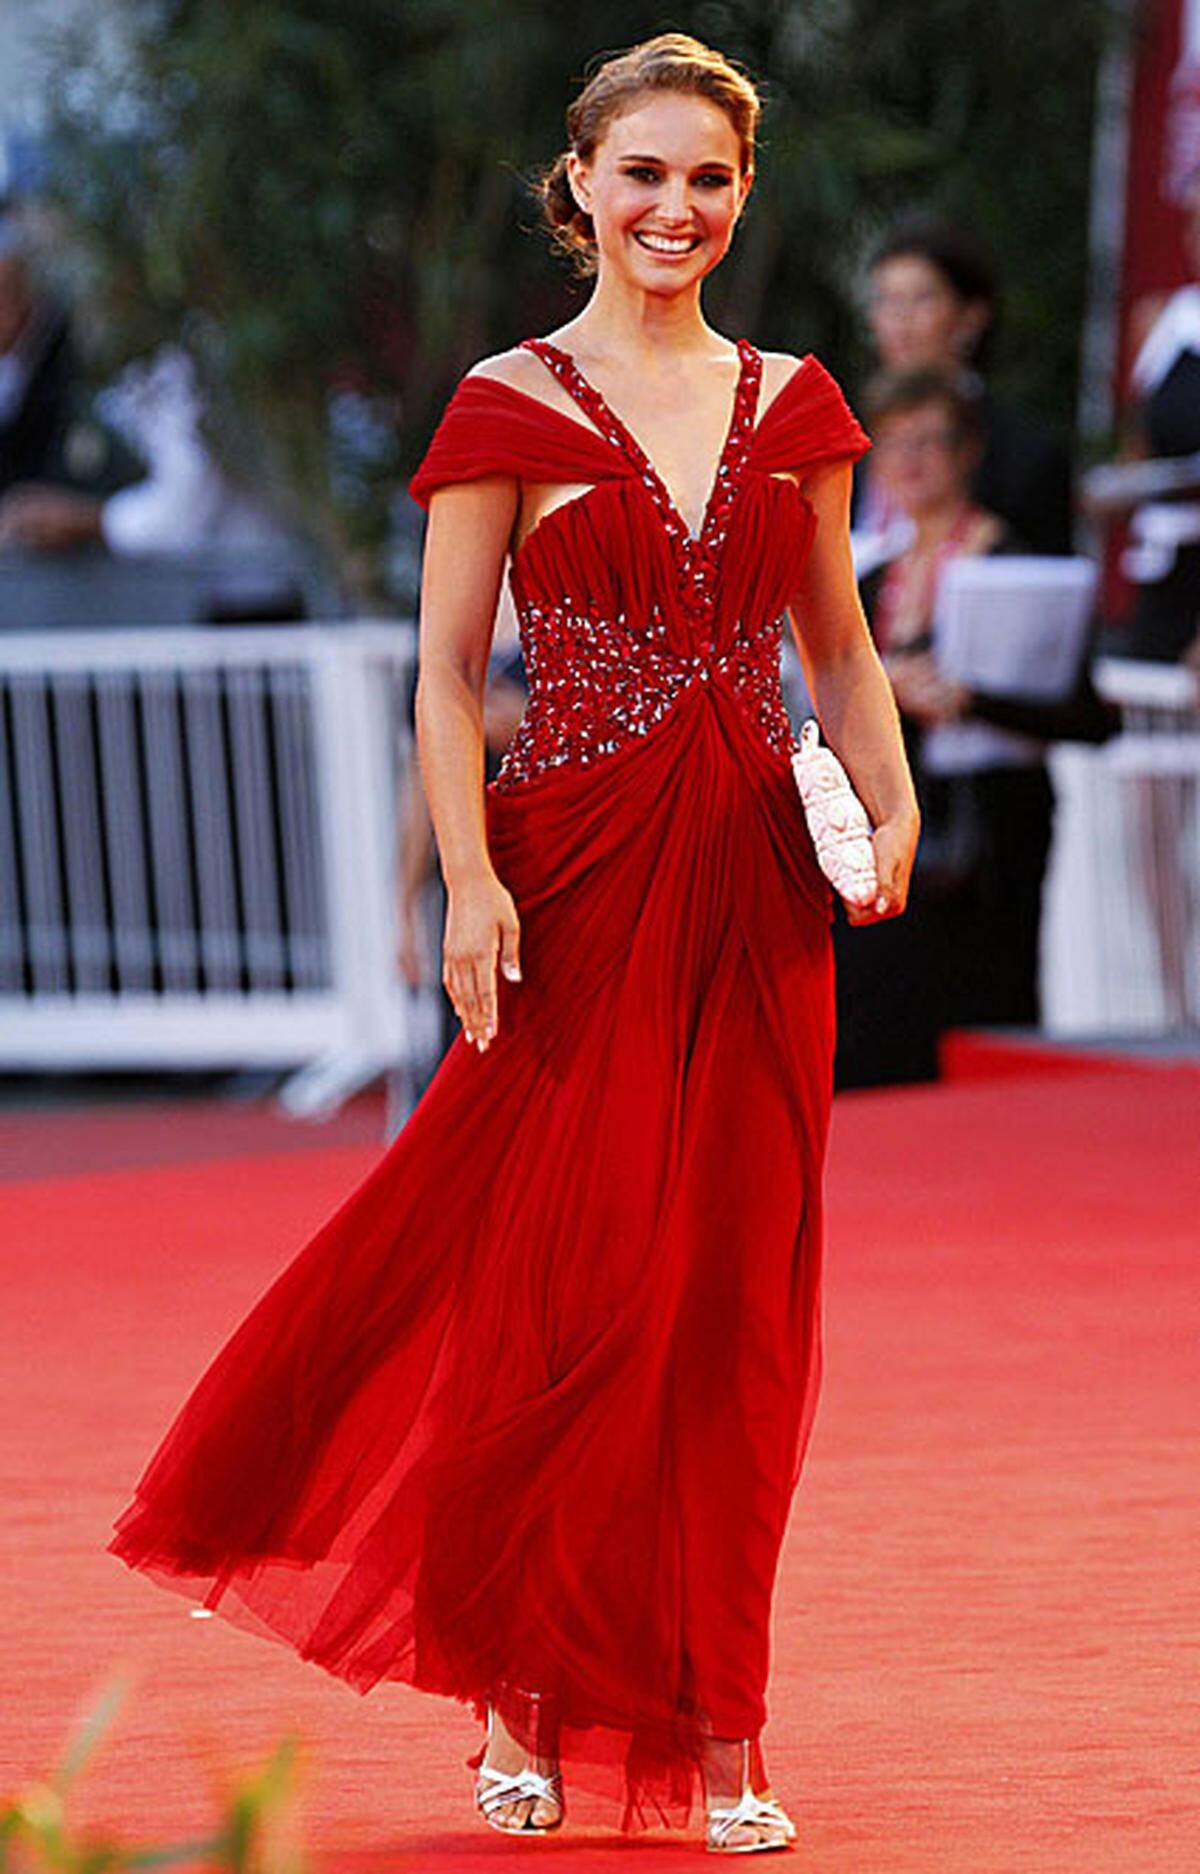 Sie ist einer der großen Stars der diesjährigen Filmfestspiele: Natalie Portman spielt in "Black Swan" eine Ballettänzerin. Bei der Premiere erschien sie in einer bodenlangen, roten Robe von Rodarte. Das Design-Duo hinter dem Label, Kate und Laura Mulleavy, entwarf auch die Kostüme für die Tänzer des Films.